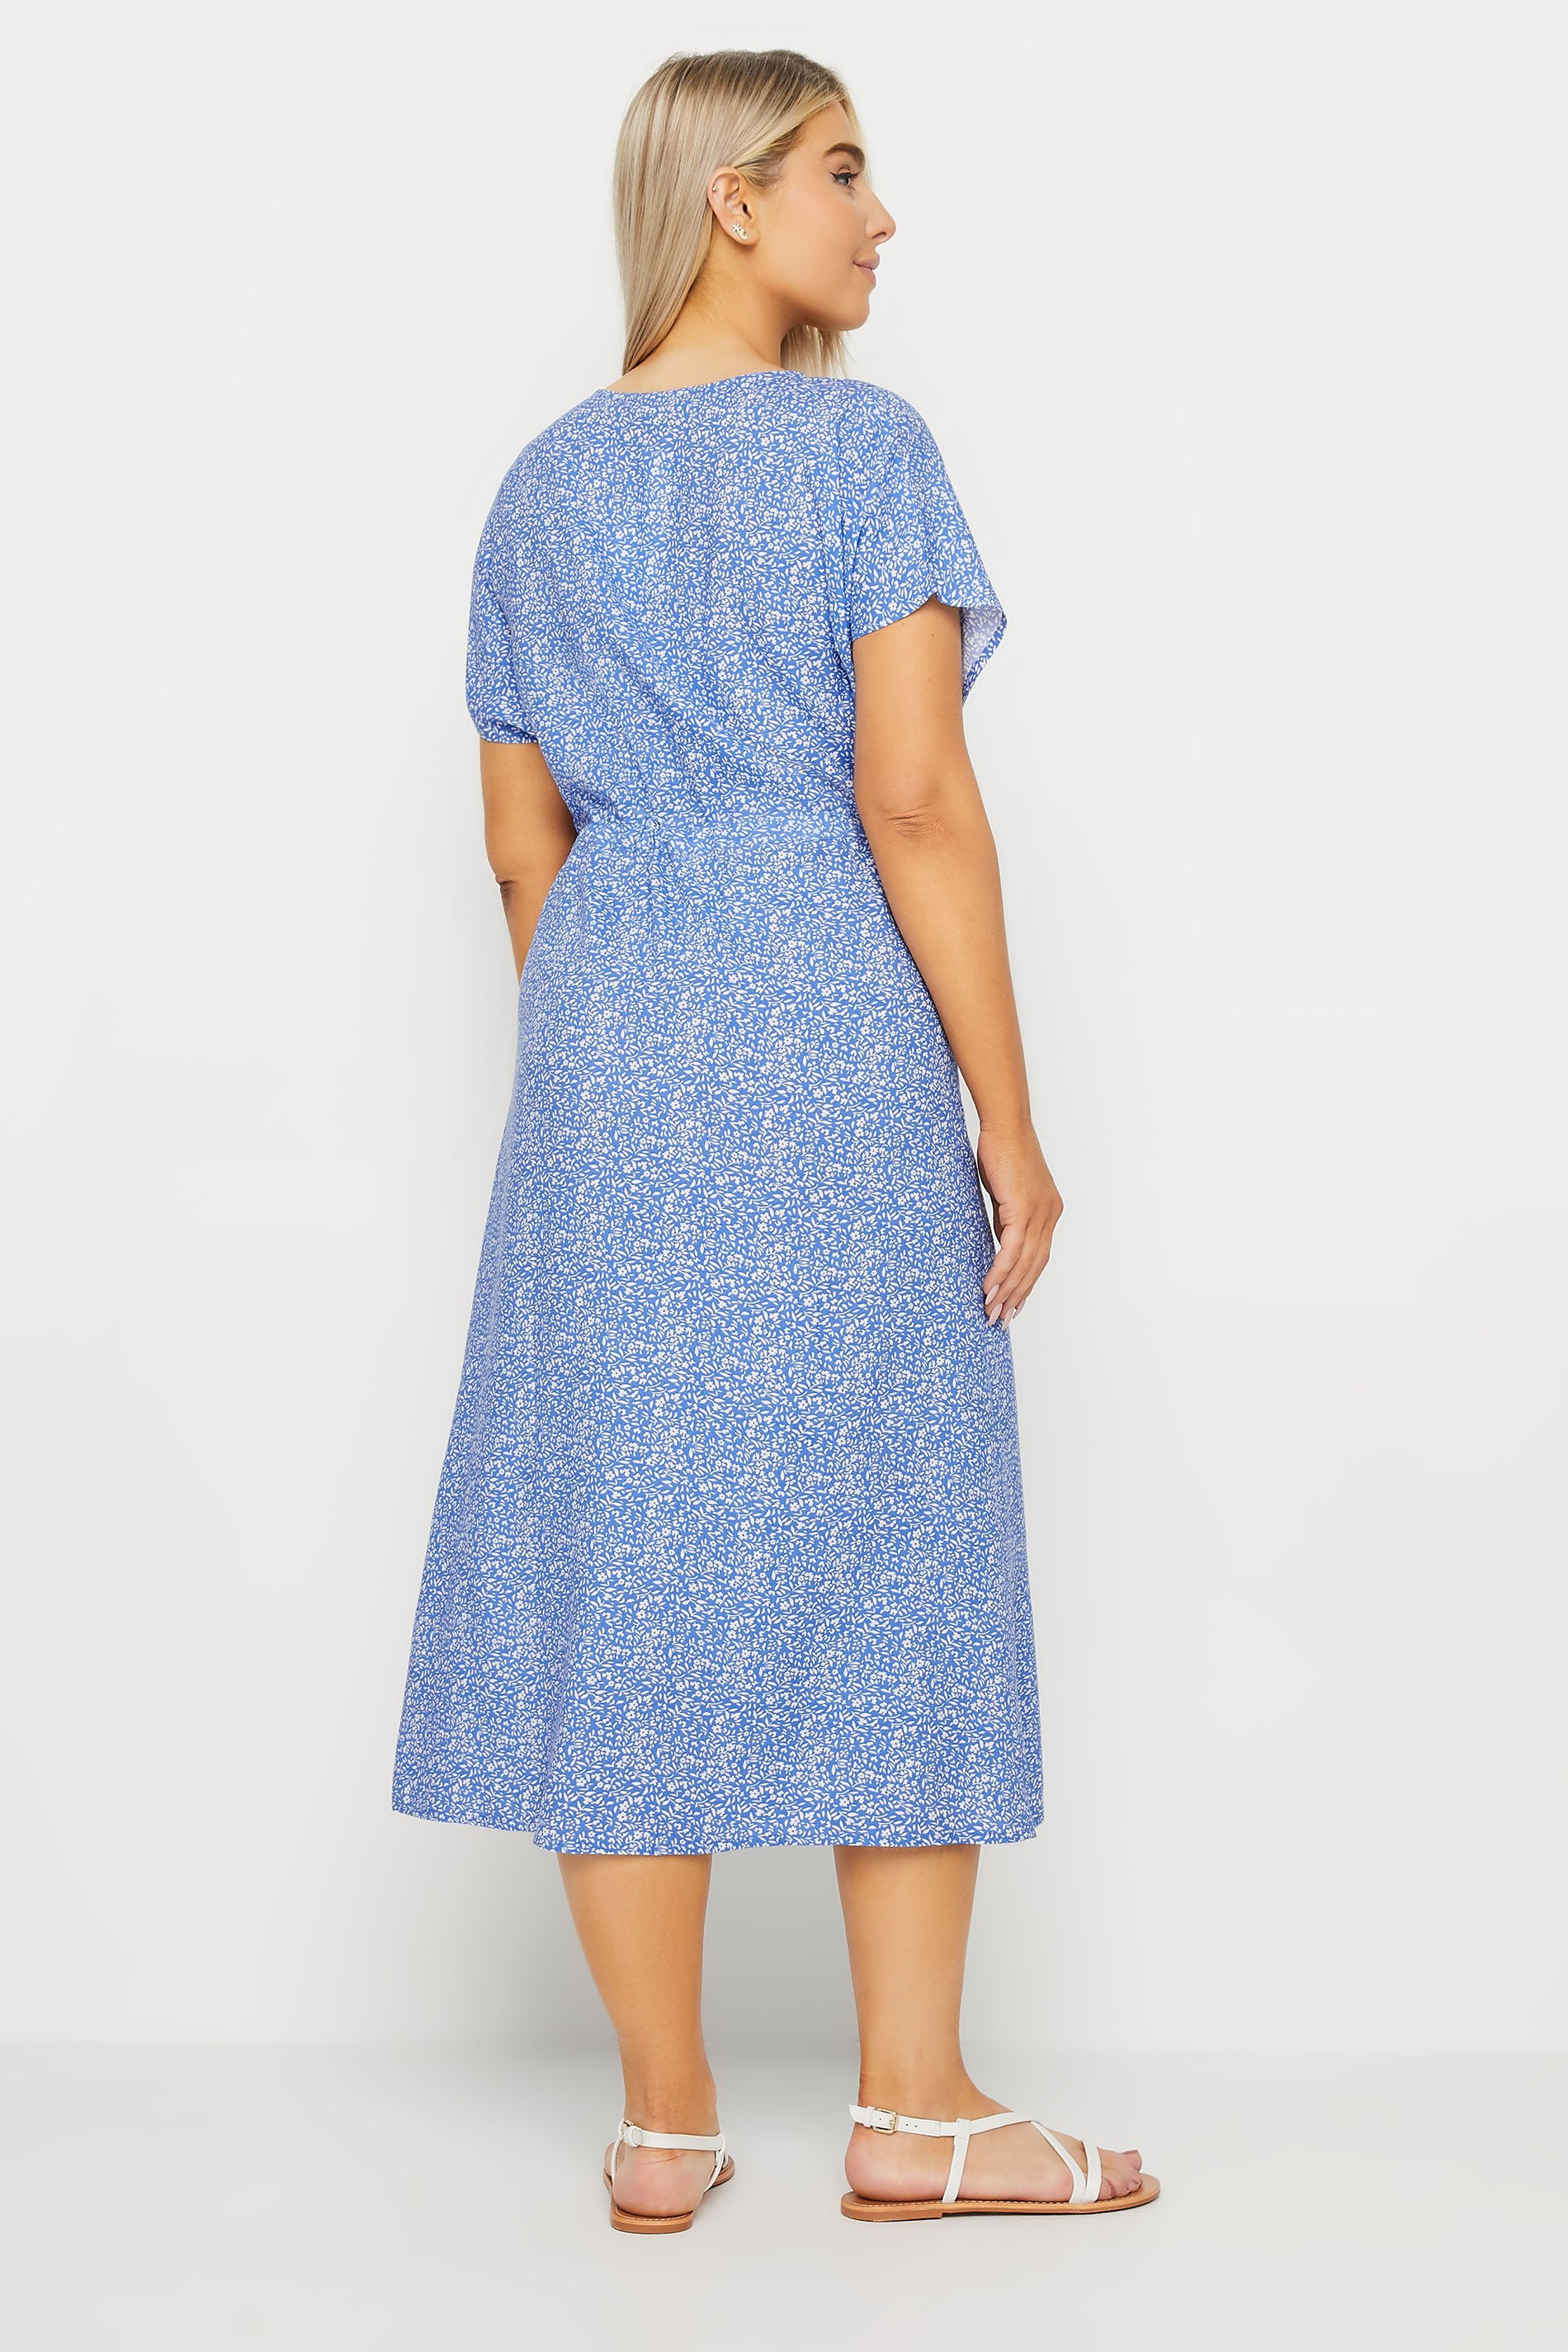 M&Co Blue Ditsy Floral Tie Waist Dress | M&Co 3